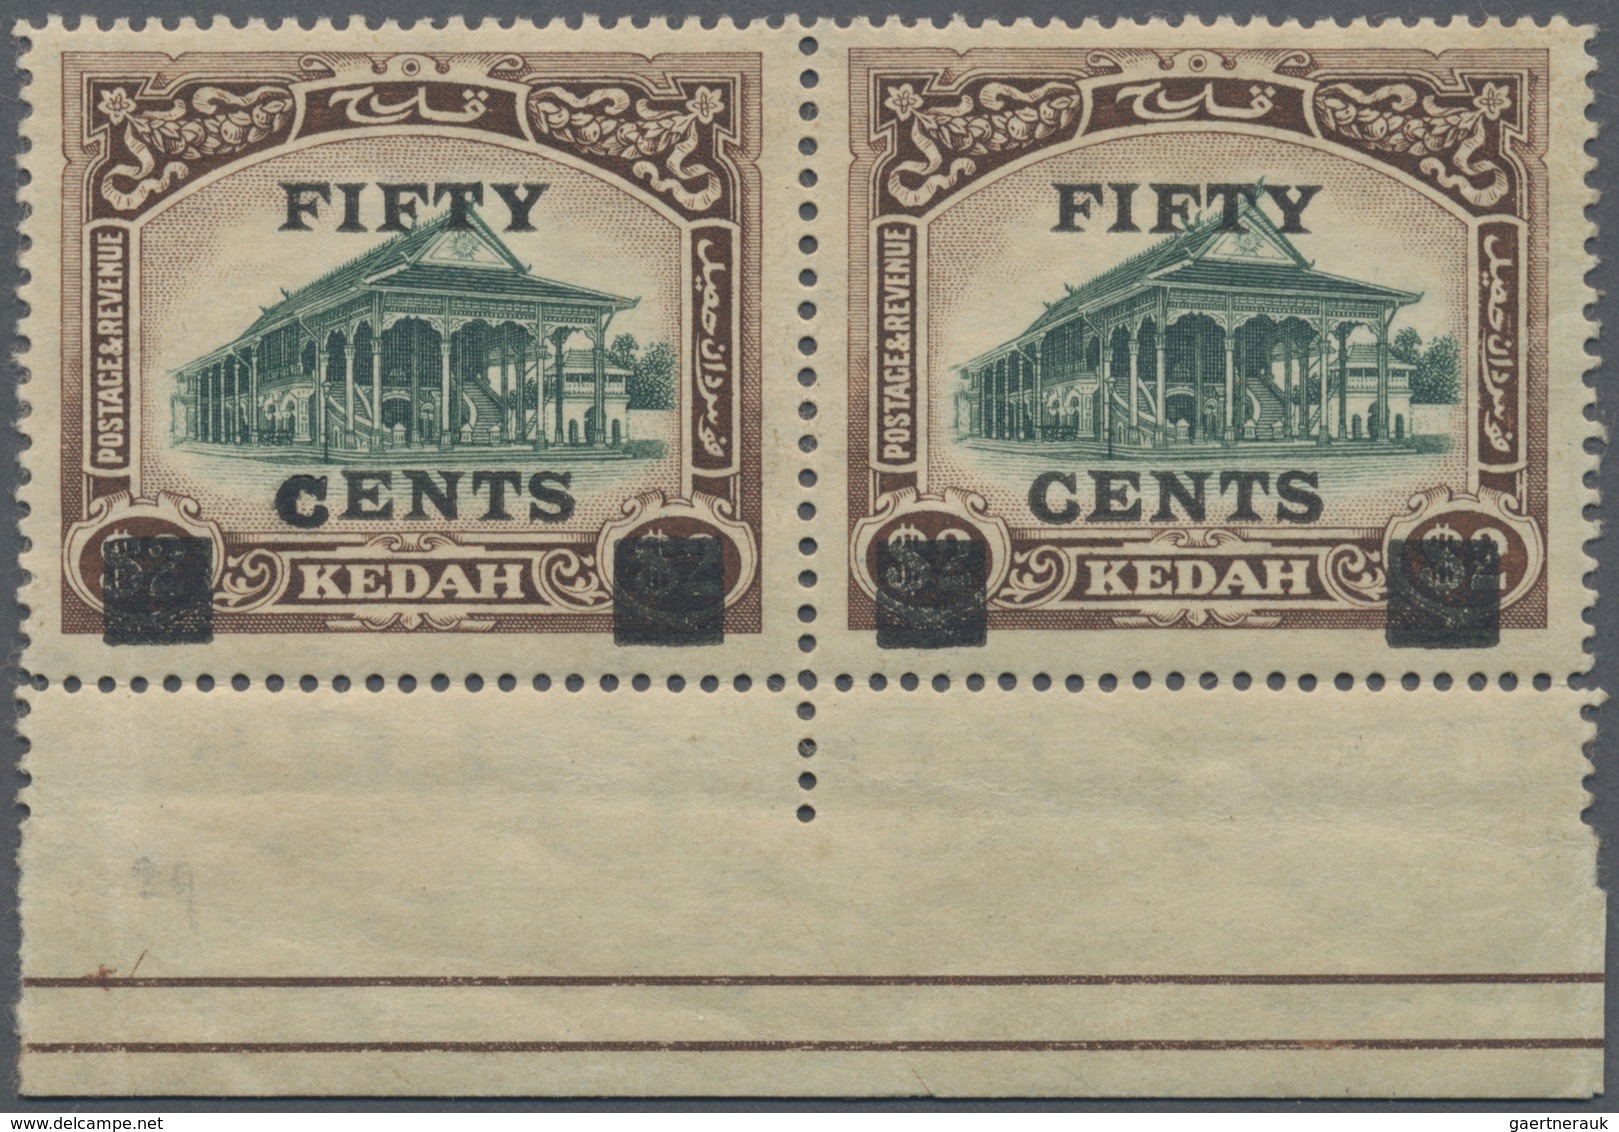 ** Malaiische Staaten - Kedah: 1919 50c. On $2 Green & Brown Bottom Marginal Pair, Left Hand Stamp (She - Kedah